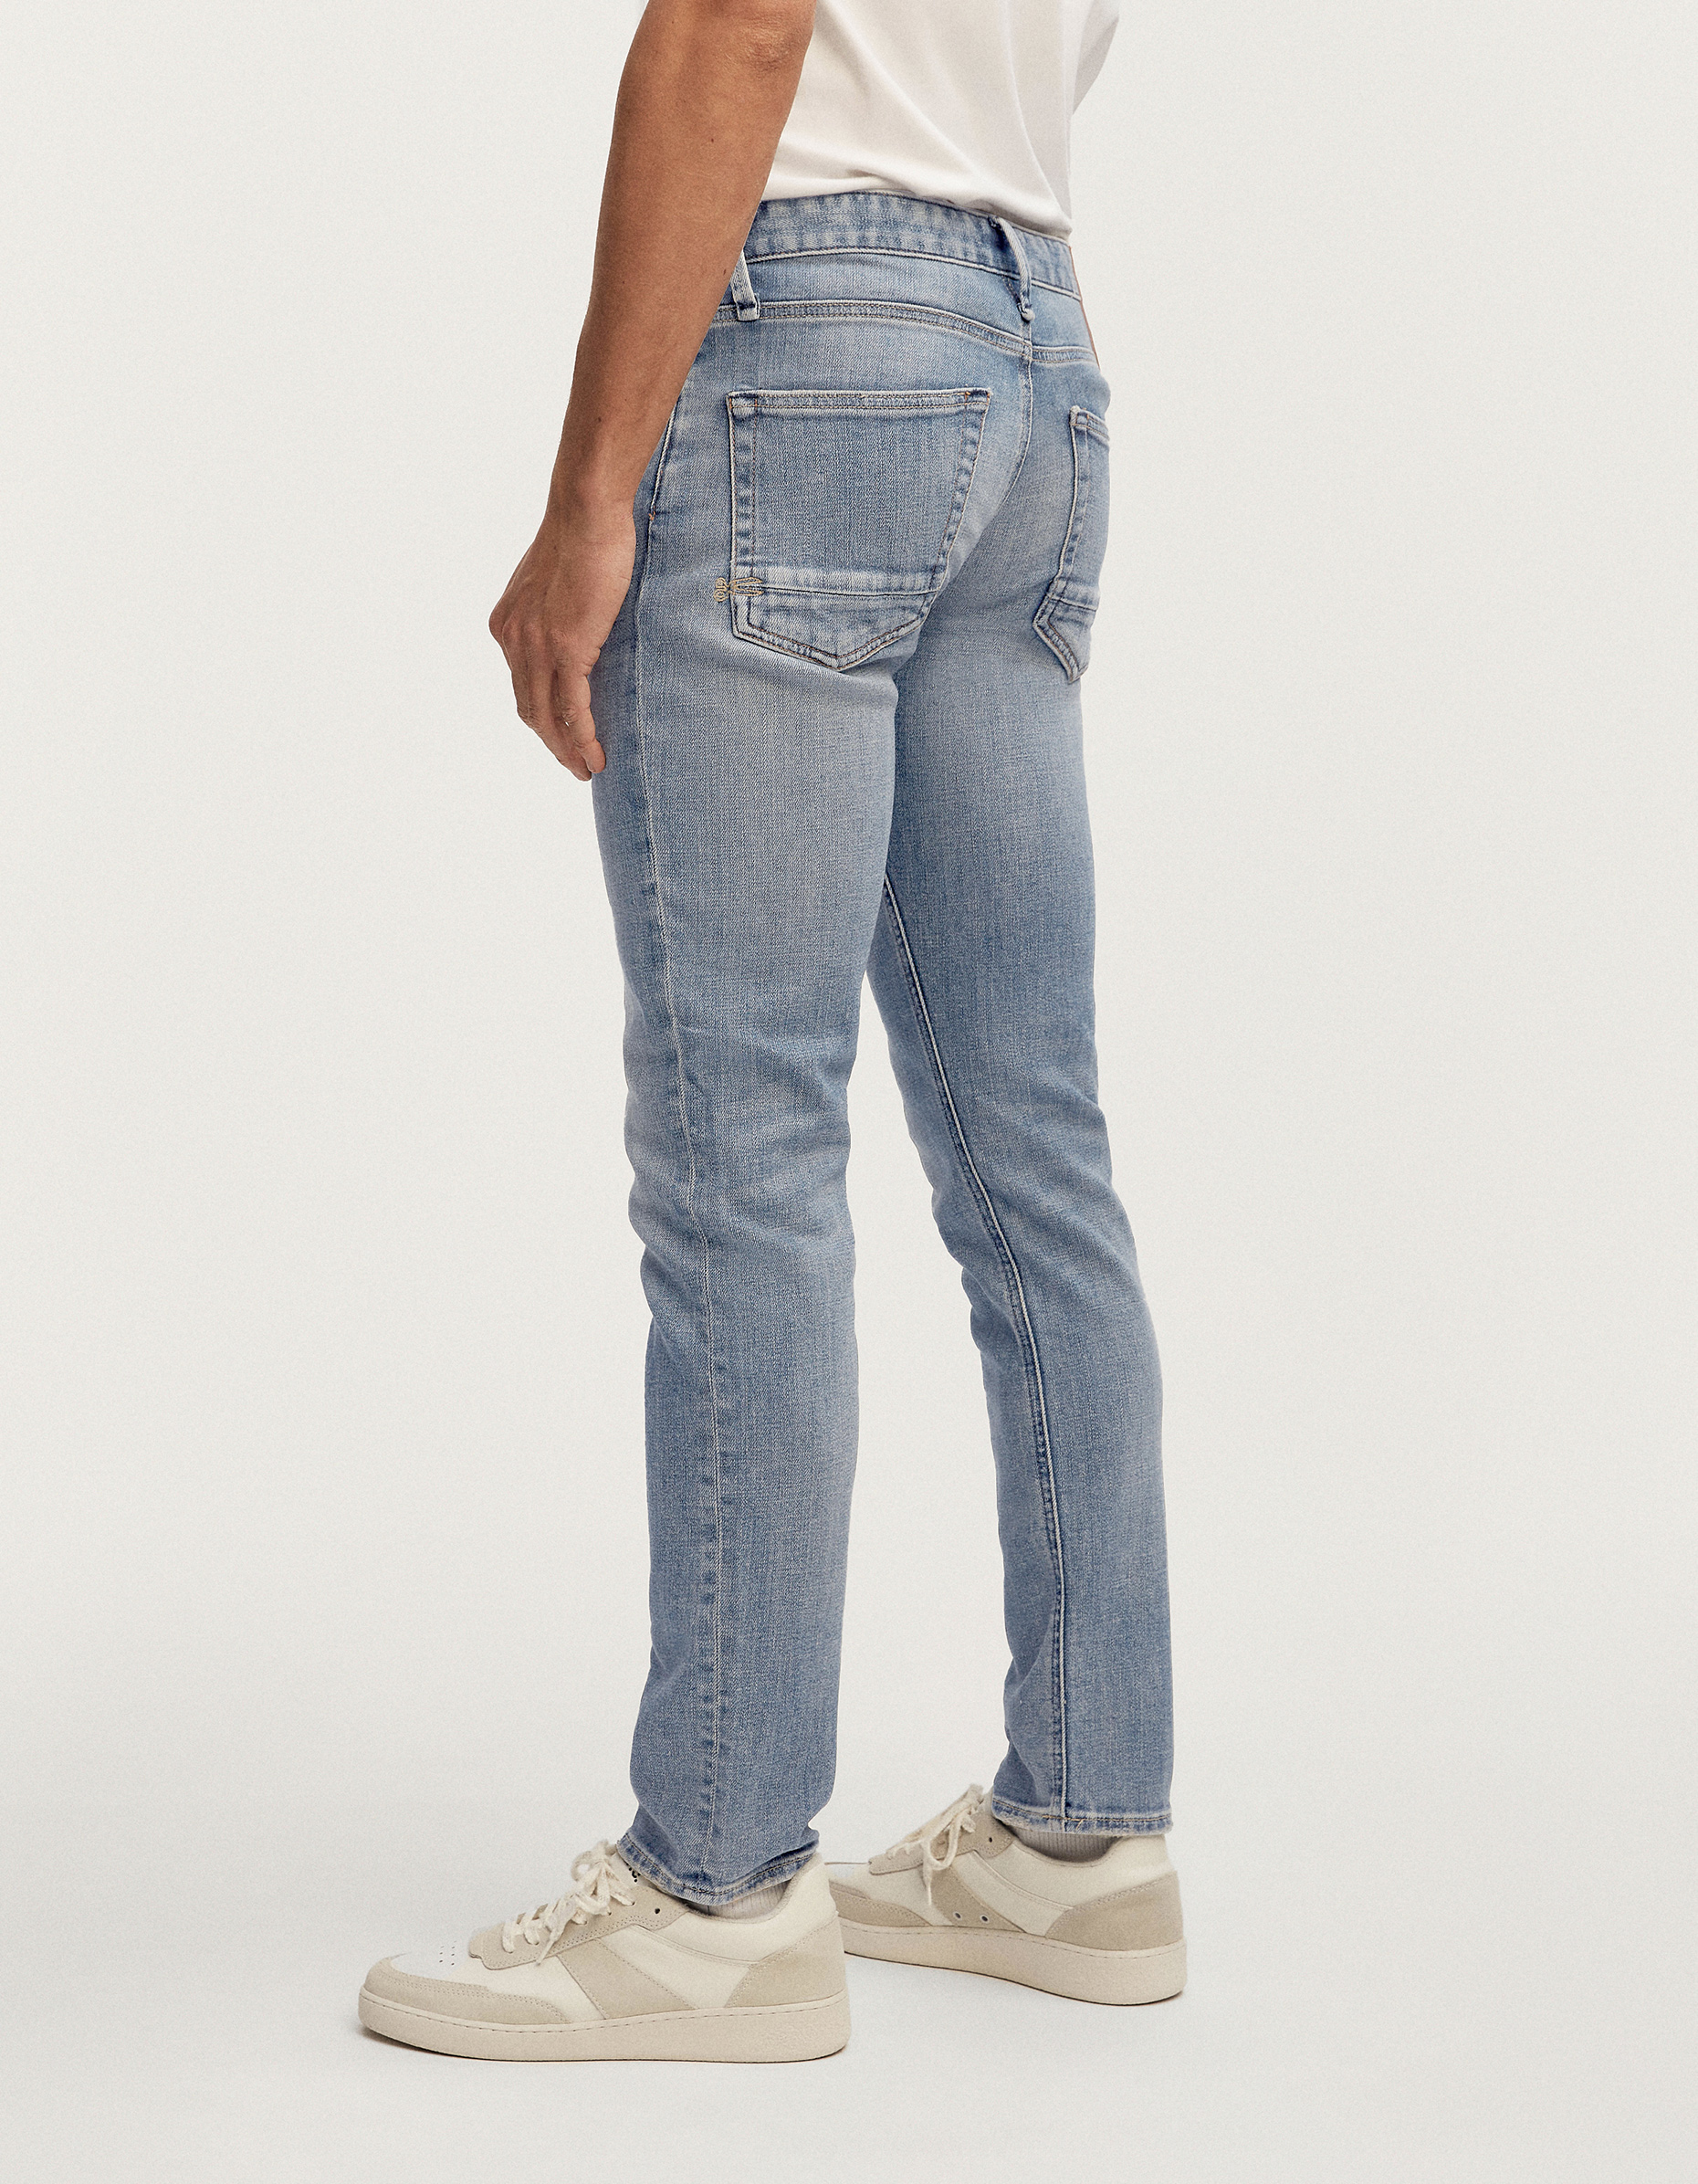 Men Jeans - Slim Fit - Razor